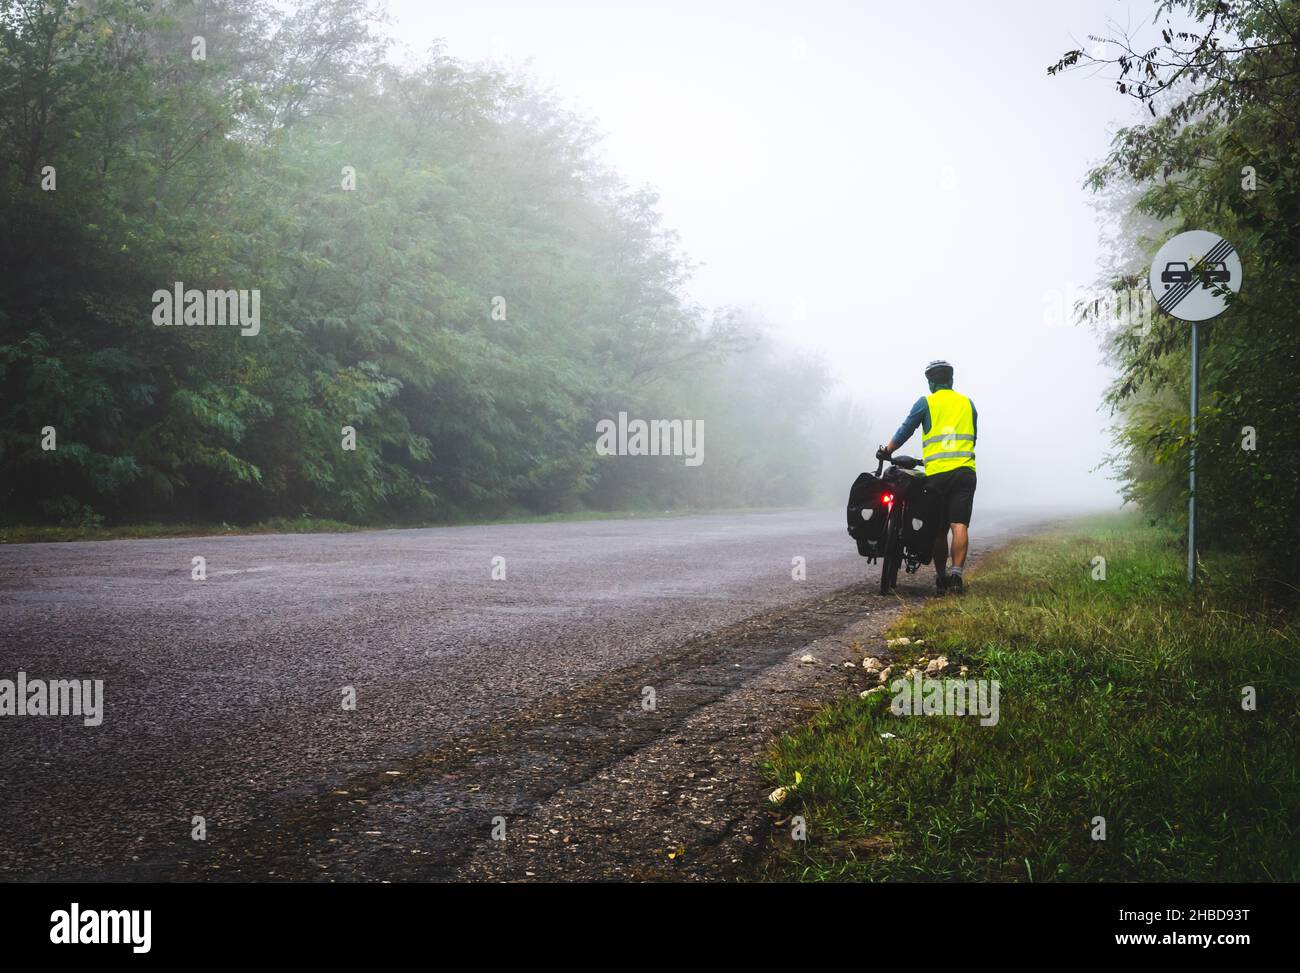 Il ciclista con giubbotto riflettente e accendini si sta camminando lungo la strada per la nebbia in natura. Escursioni in bicicletta in cattive condizioni meteorologiche e cattiva visibilità Foto Stock